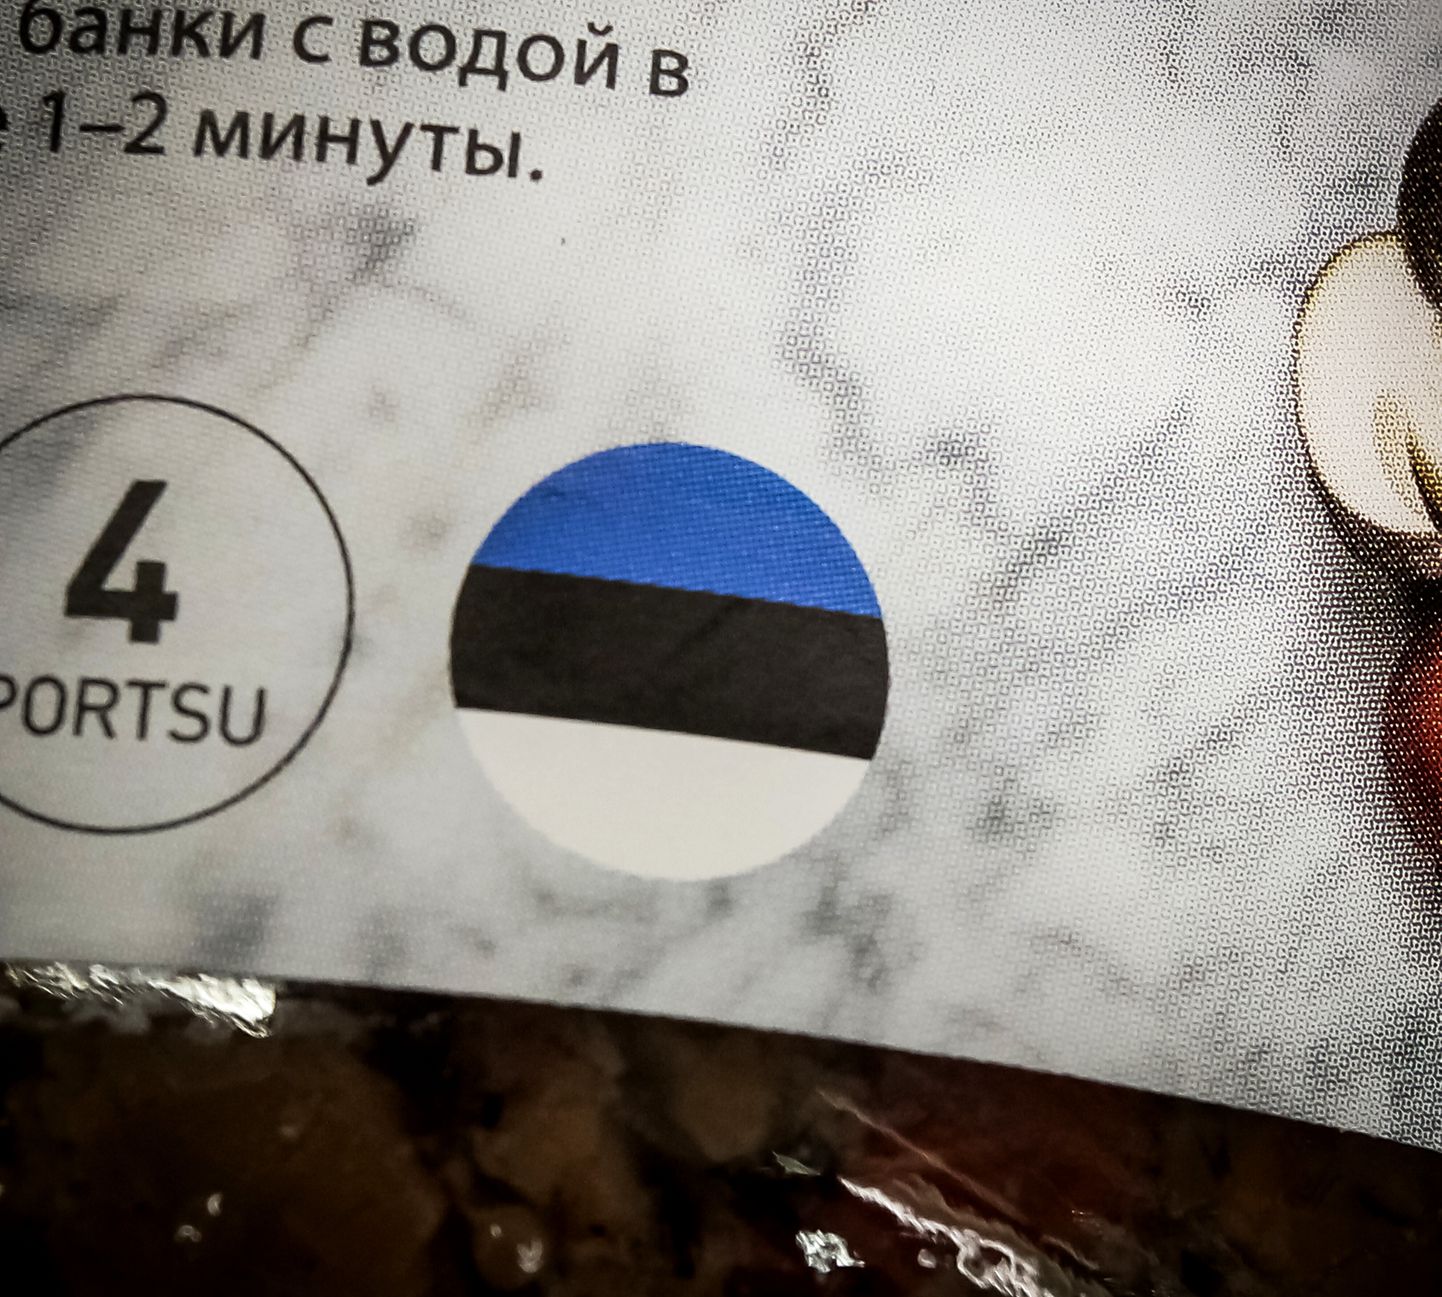 Eesti lipumärk on päritolumärk, mis näitab, et toote on valmistanud eestimaalased Eesti toiduainetööstuse ettevõtetes eestimaalaste maitse-eelistusi ja traditsioone silmas pidades.